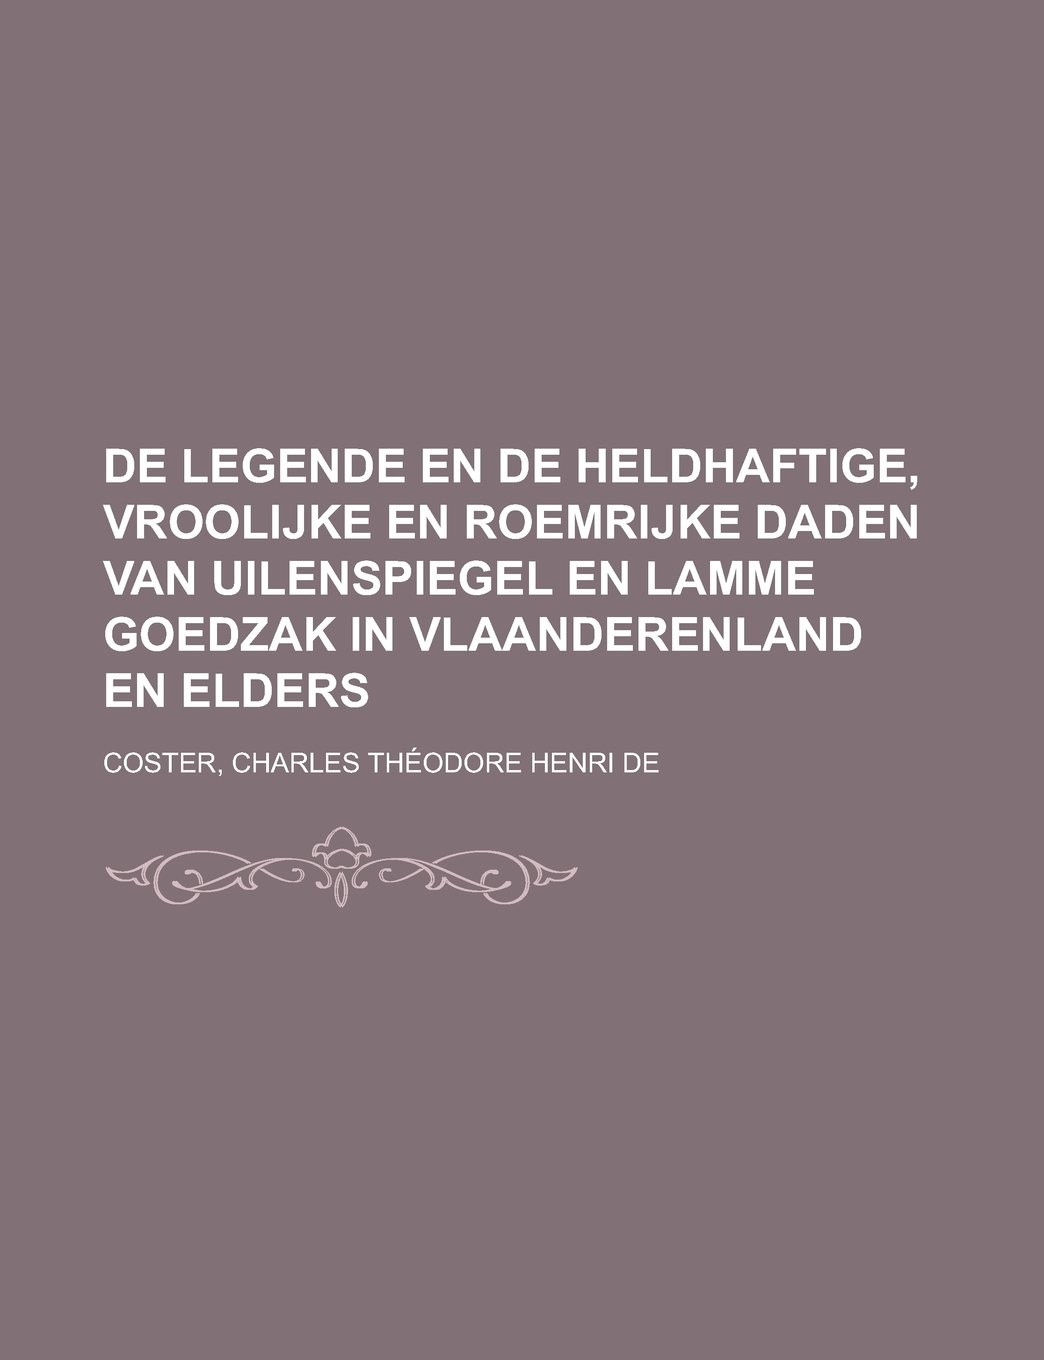 De legende en de heldhaftige, vroolijke en roemrijke daden van Uilenspiegel en Lamme Goedzak in Vlaanderenland en elders